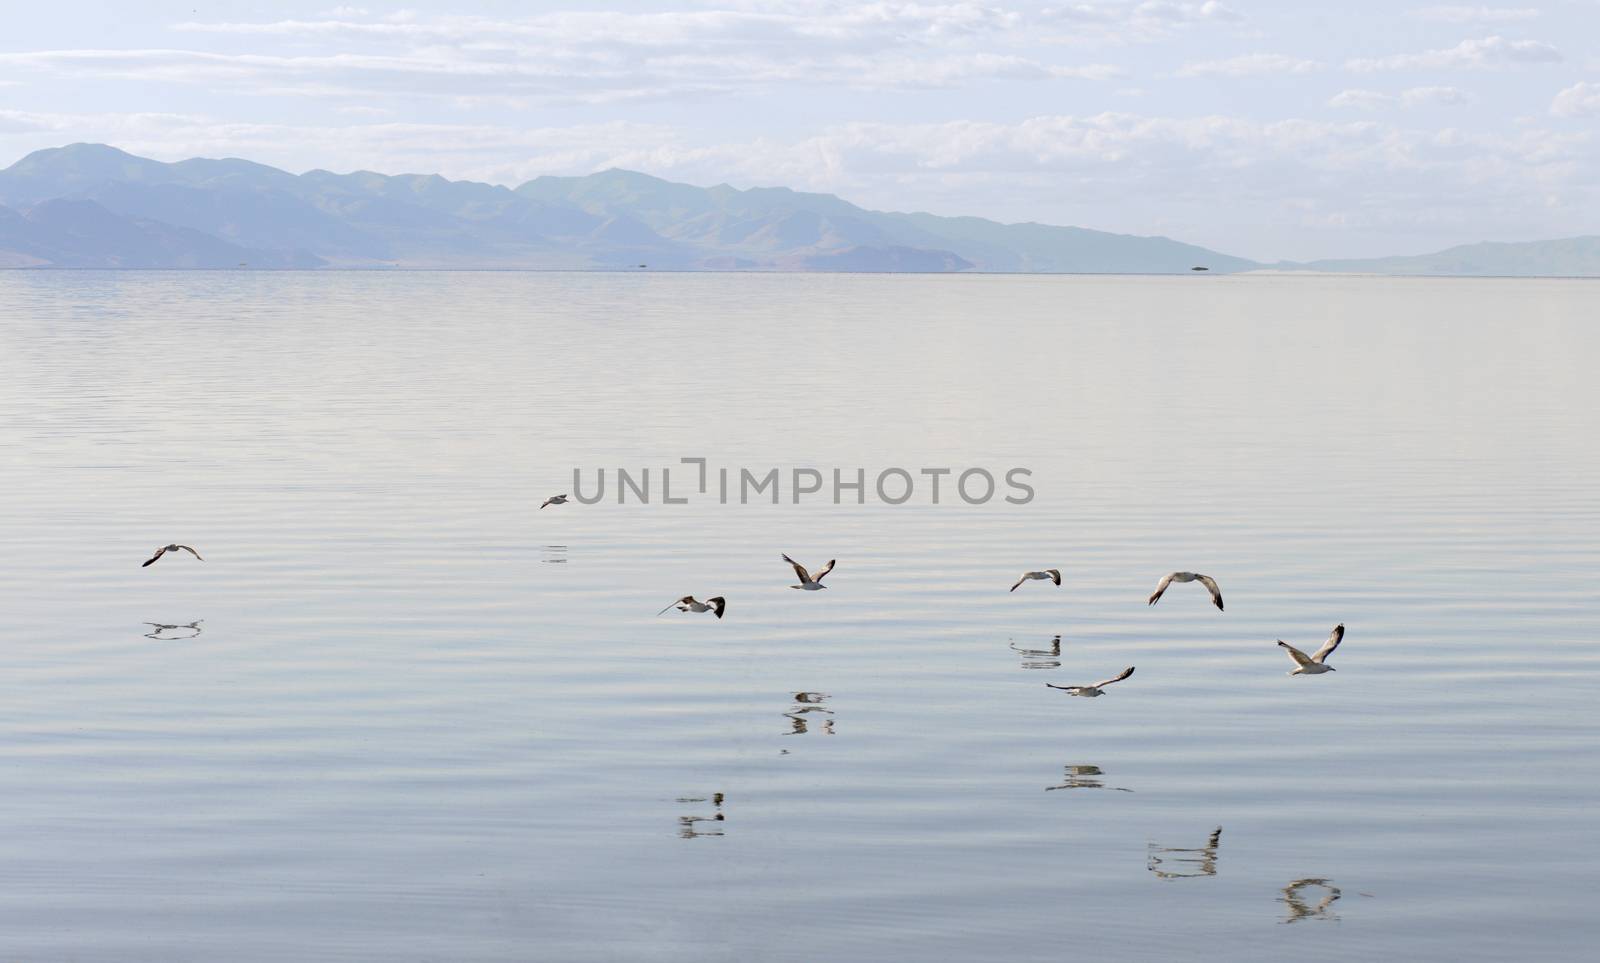 Gulls flying over the Great Salt Lake, Antelope Island State Park in Salt Lake City, Utah